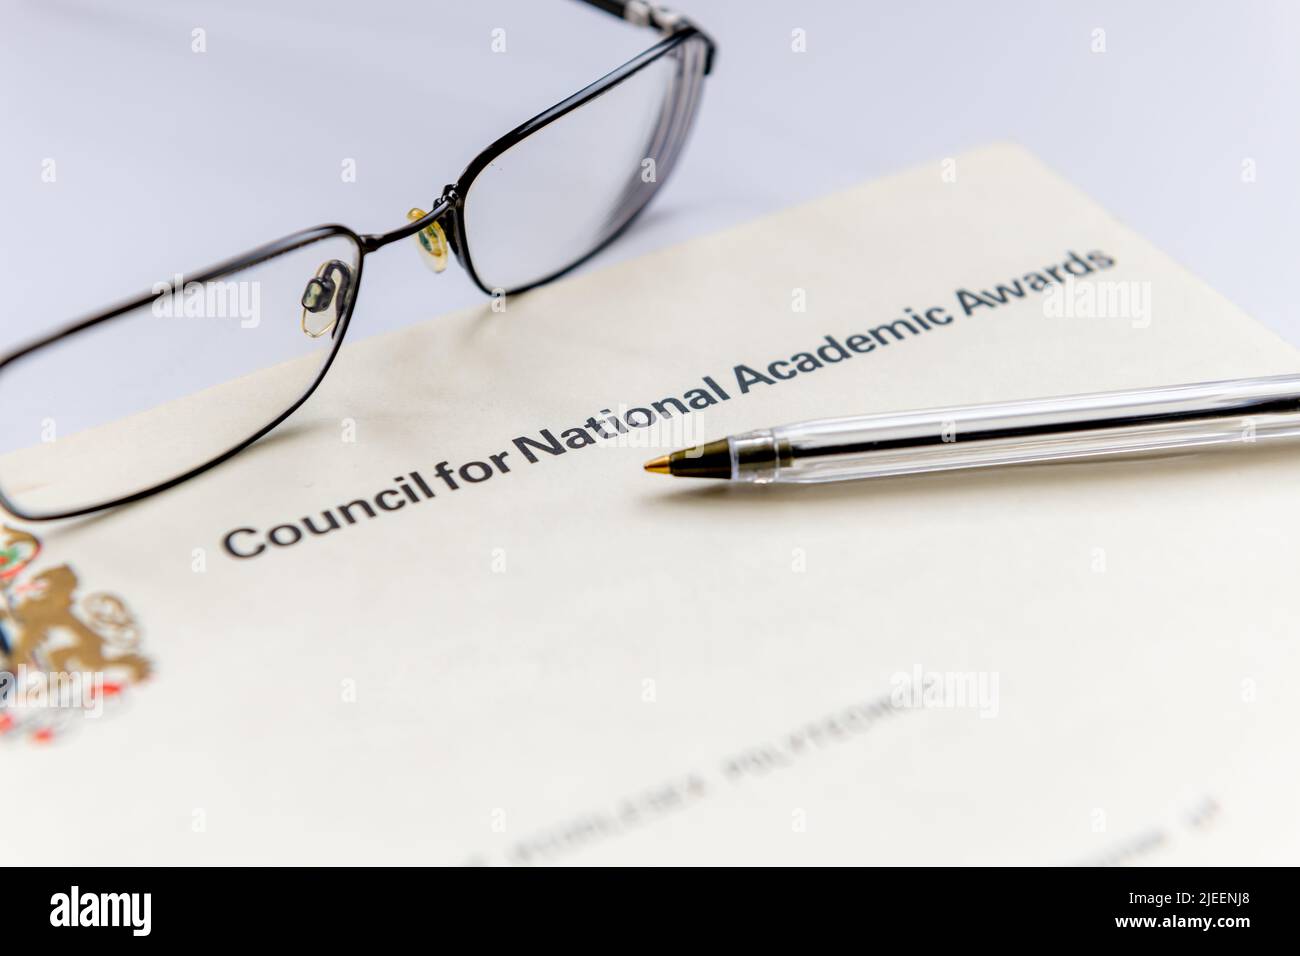 Un certificato di istruzione superiore del Regno Unito rilasciato dal Council for National Academic Awards presentato con un paio di occhiali e una penna. Foto Stock